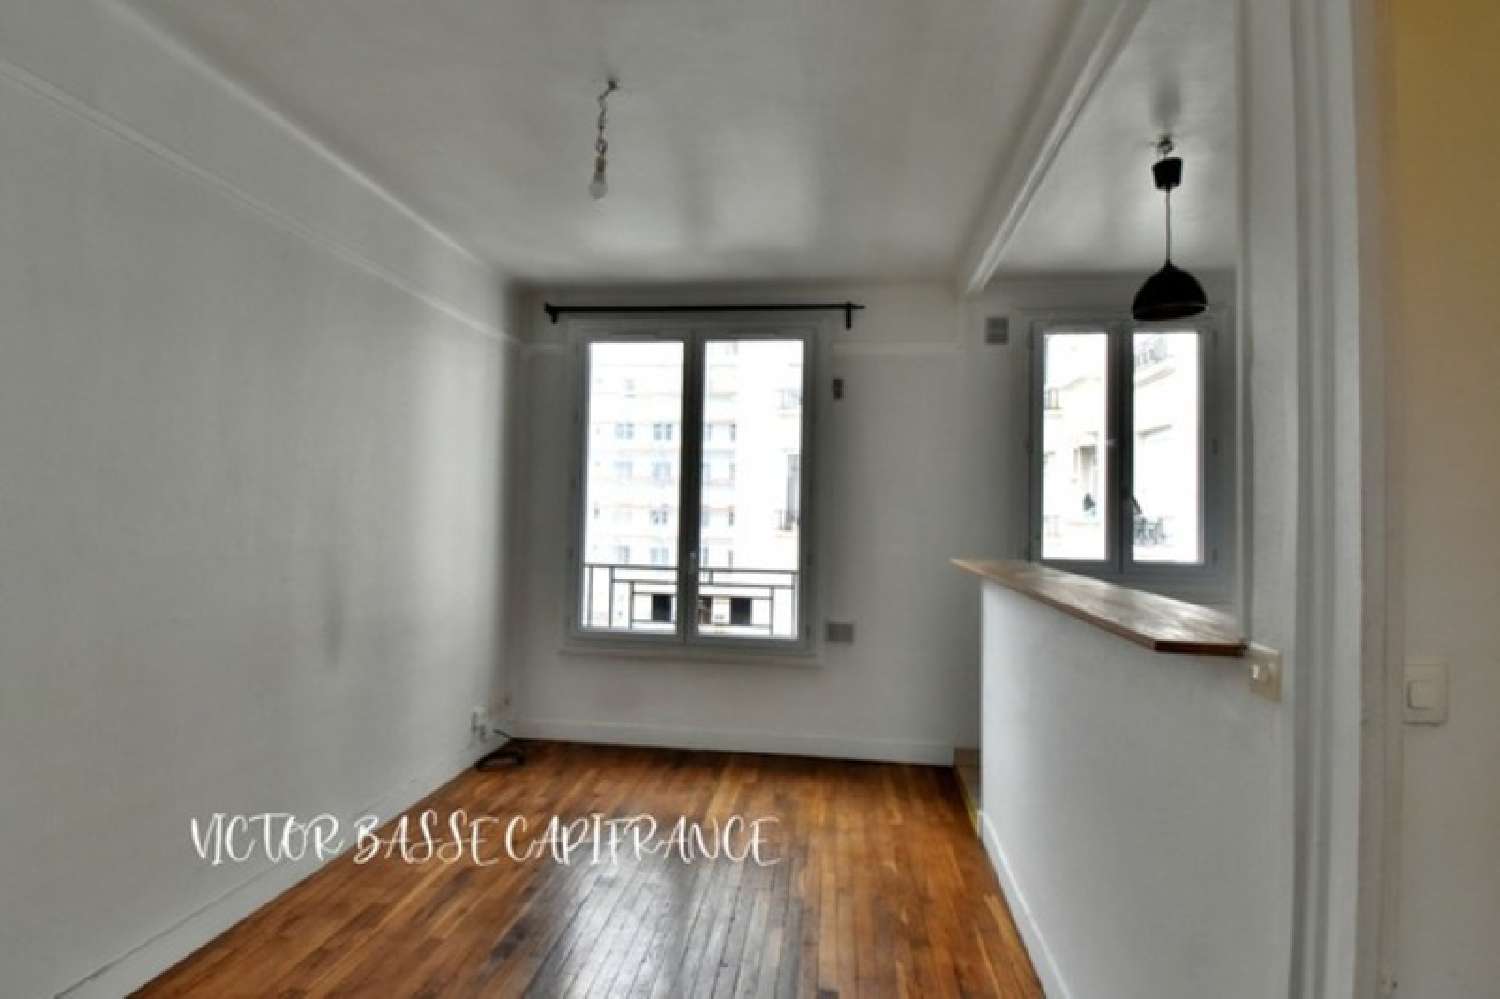  for sale apartment Courbevoie Hauts-de-Seine 6